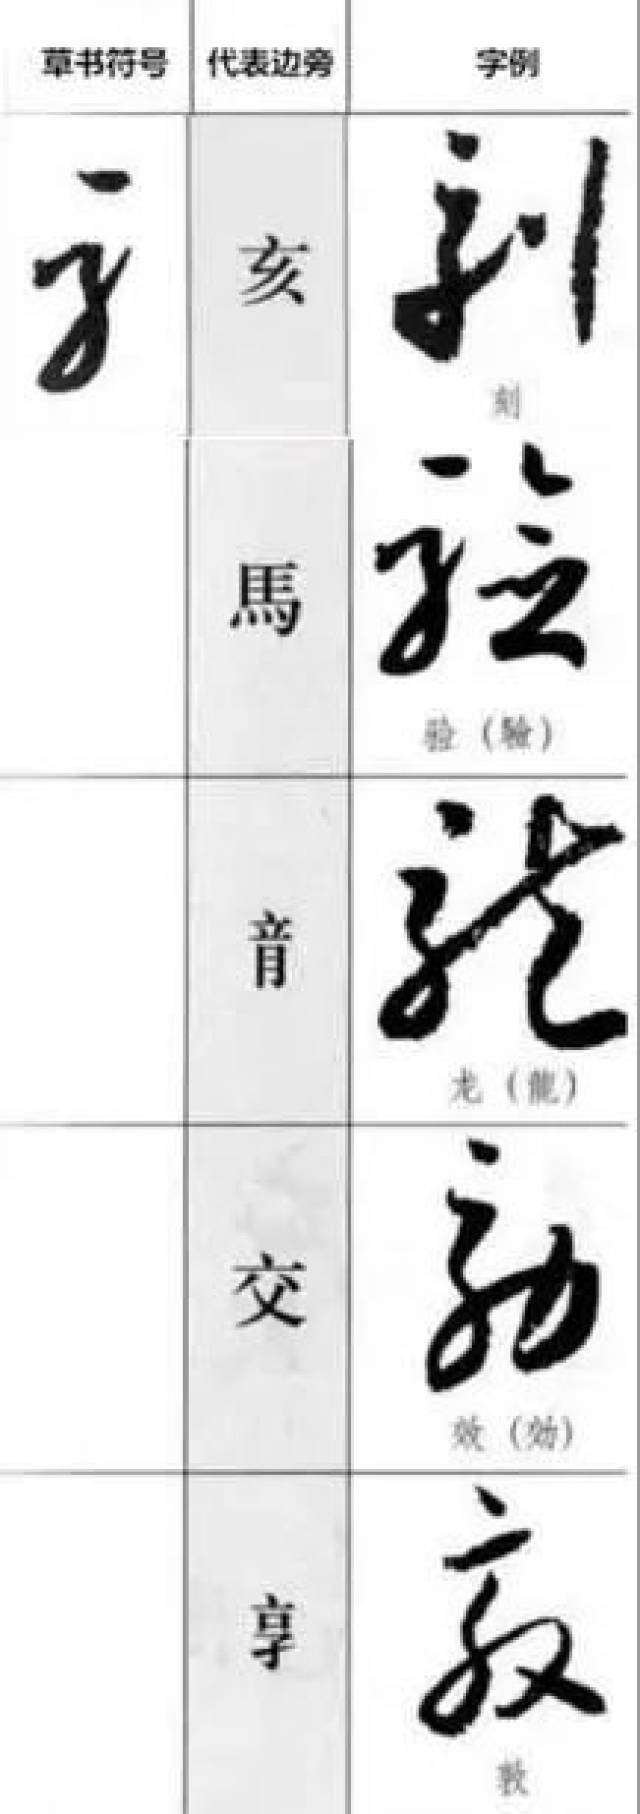 用日本人平假名的方法学草书,先记住最实用的草书符号(收藏版)